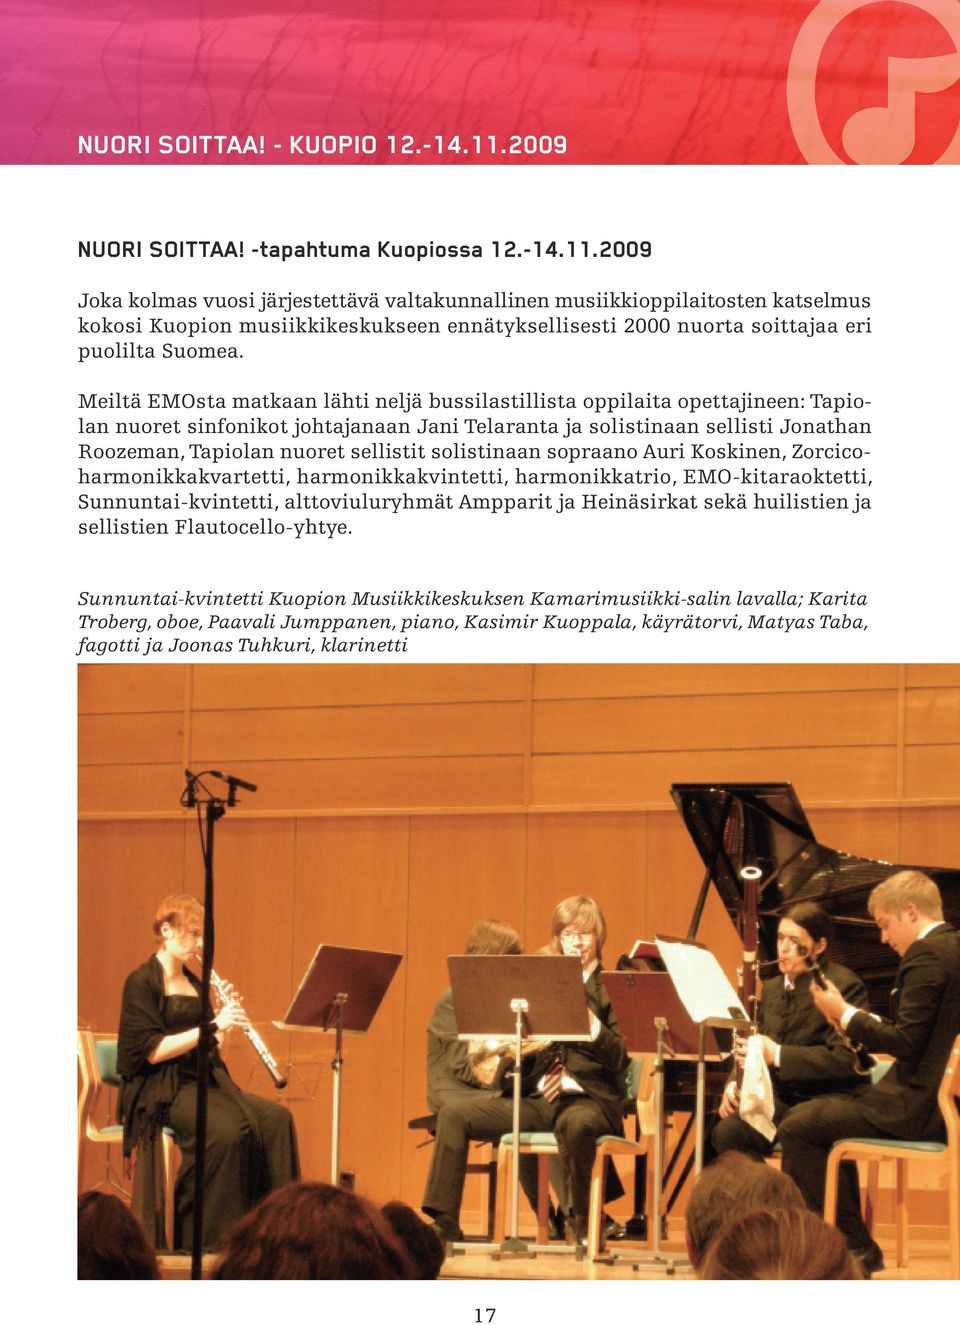 2009 Joka kolmas vuosi järjestettävä valtakunnallinen musiikkioppilaitosten katselmus kokosi Kuopion musiikkikeskukseen ennätyksellisesti 2000 nuorta soittajaa eri puolilta Suomea.